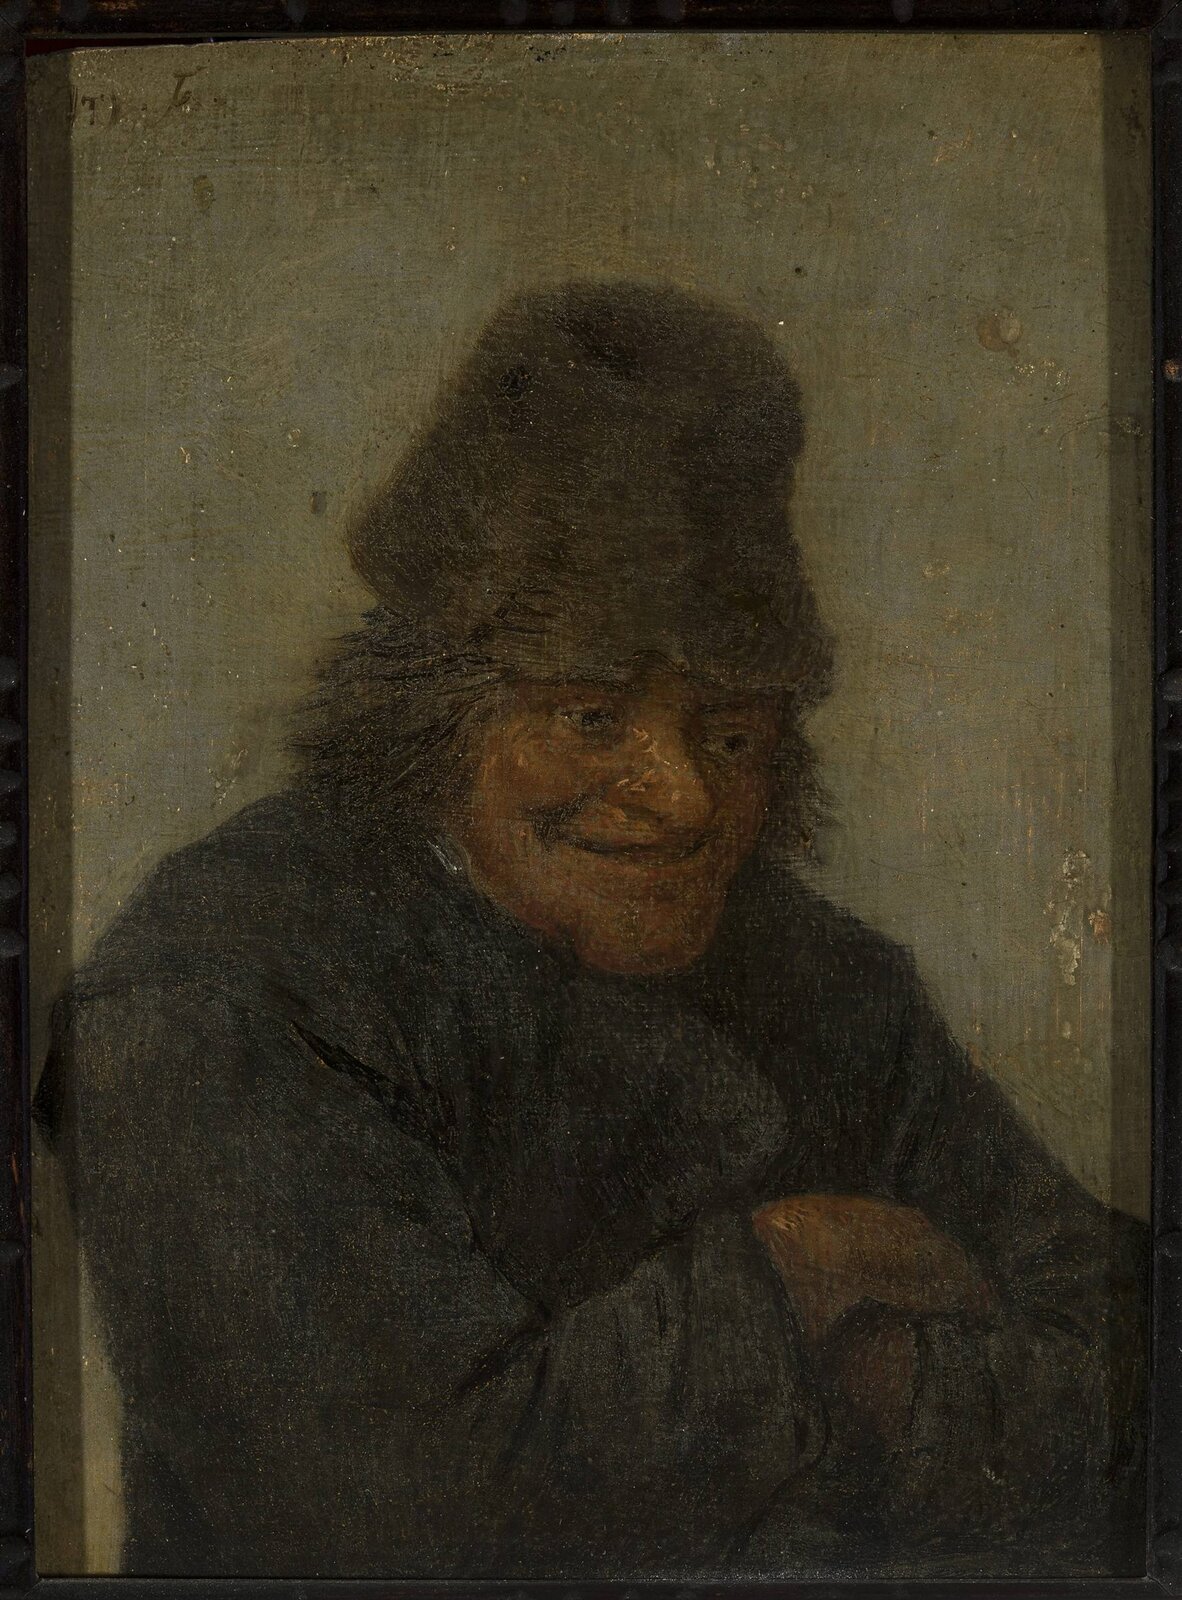 Ilustracja przedstawia obraz Davida Teniersa pt. „Popiersie śmiejącego się chłopa”. Obraz przedstawia zgarbionego, starszego mężczyznę z założonymi rękoma. Postać śmieje się. Ubrany jest w ciemny płaszcz, a na głowie ma czapkę spod, której wystają włosy. Obraz ma ciemnobrązową ramę.